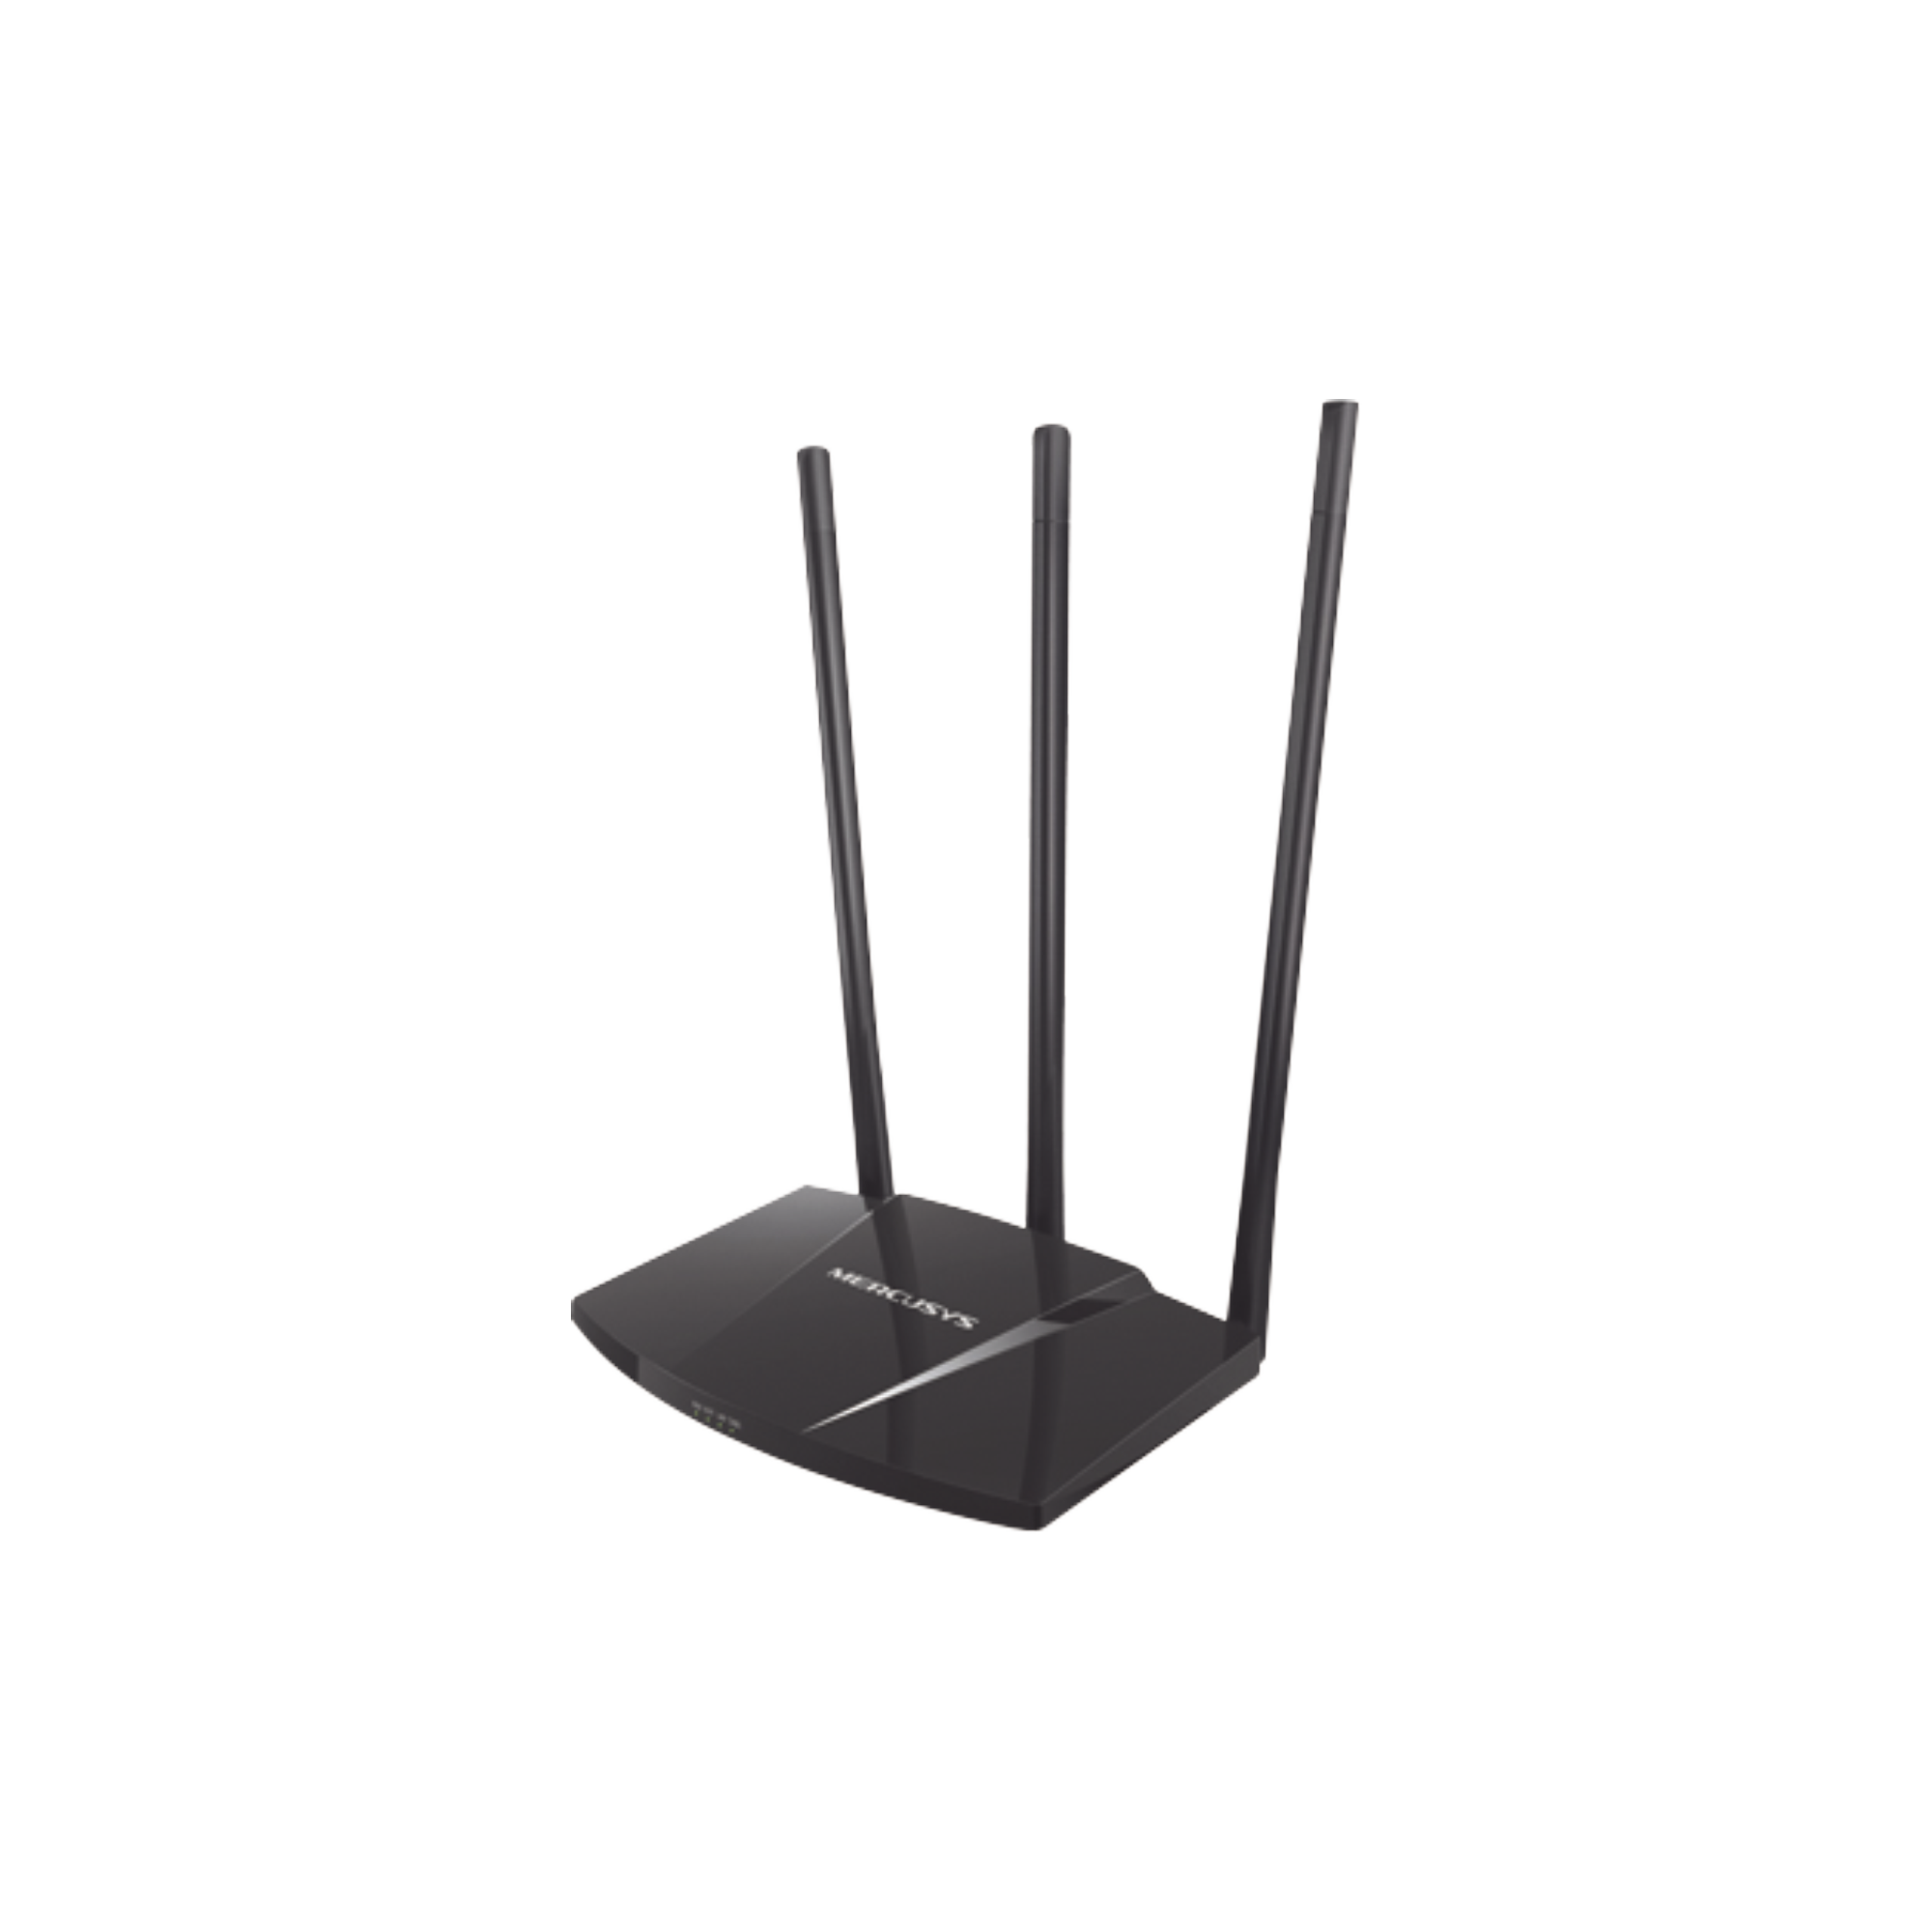 Router N de alta potencia 300 Mbps / 1 Puerto WAN 10/100 / 3 Puertos LAN 10/100 / Chip PA (potencia transmisión 2x) / 3 Antenas de 7 dBi